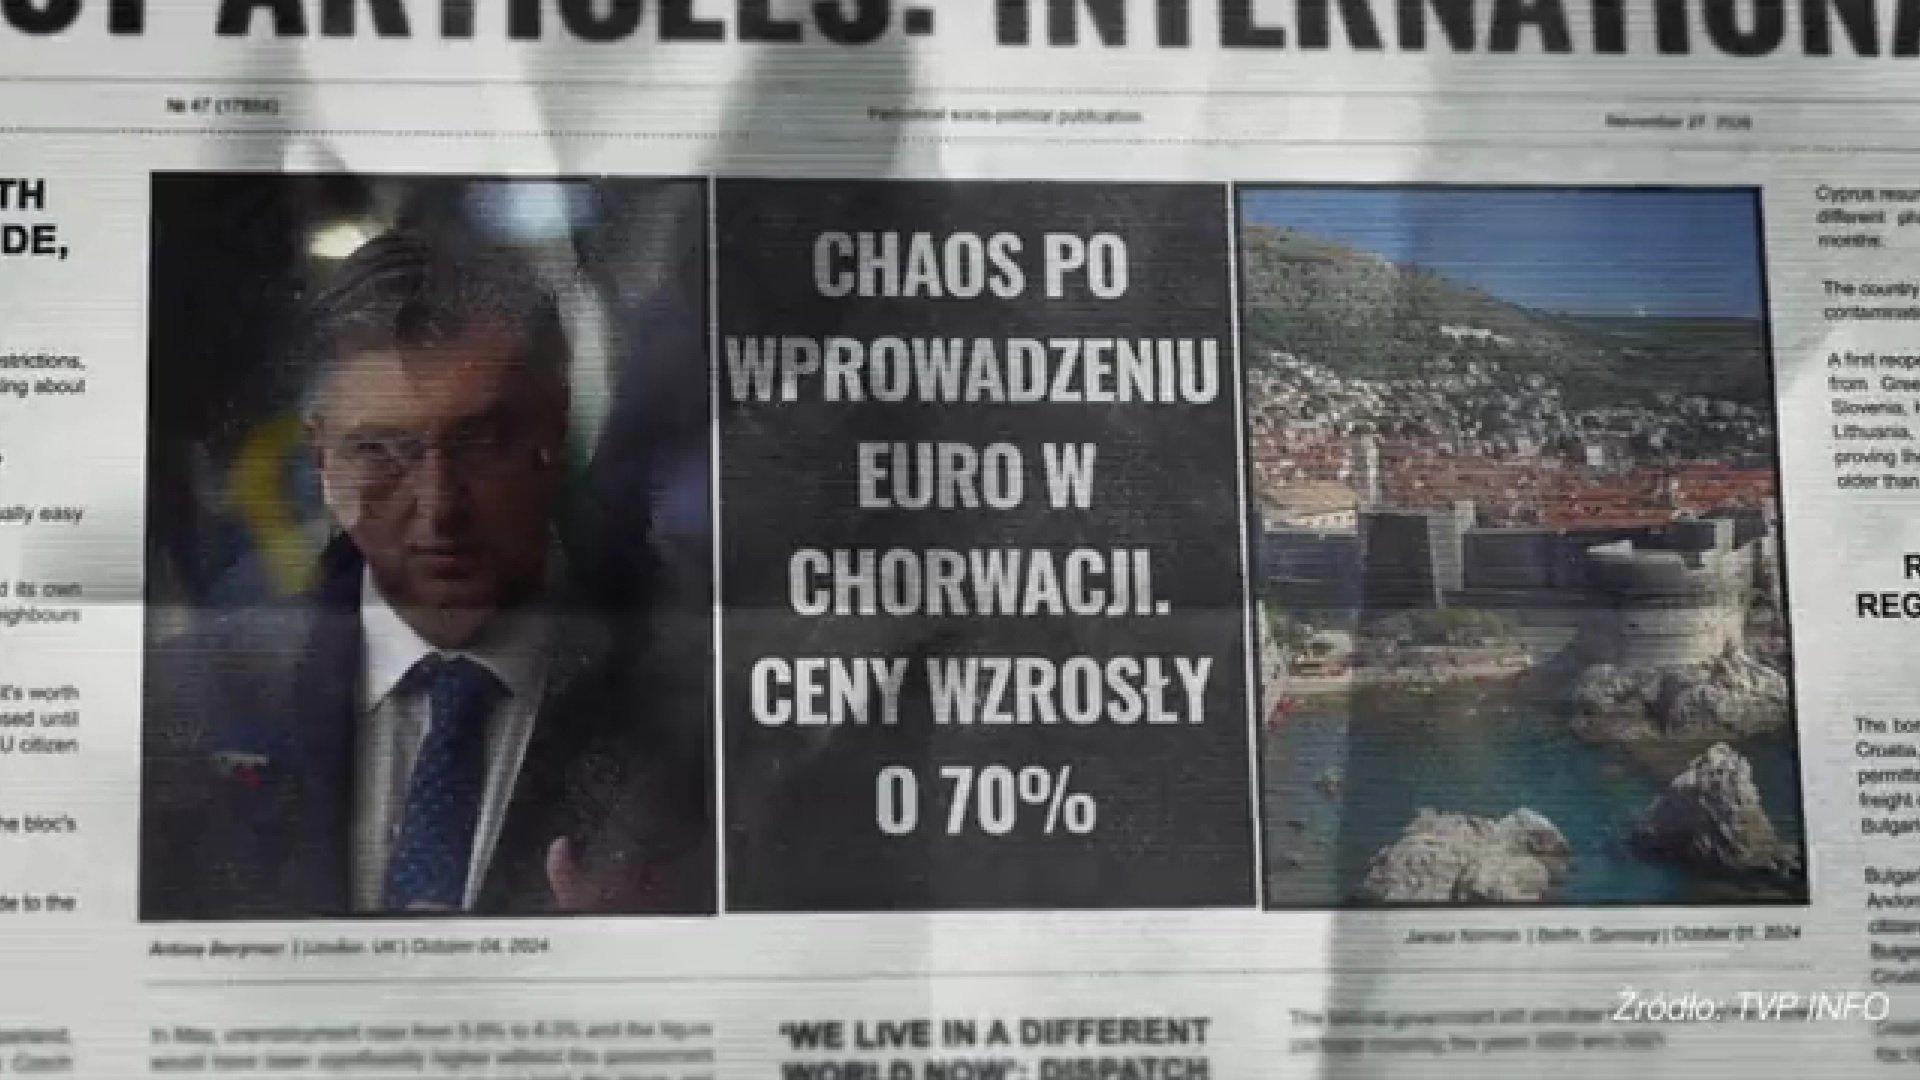 Nagłówek fikcyjnej gazety z białym napisem na czarnym tle: "Chaos po wprowadzeniu euro w Chorwacji, ceny wzrosły o 70%"